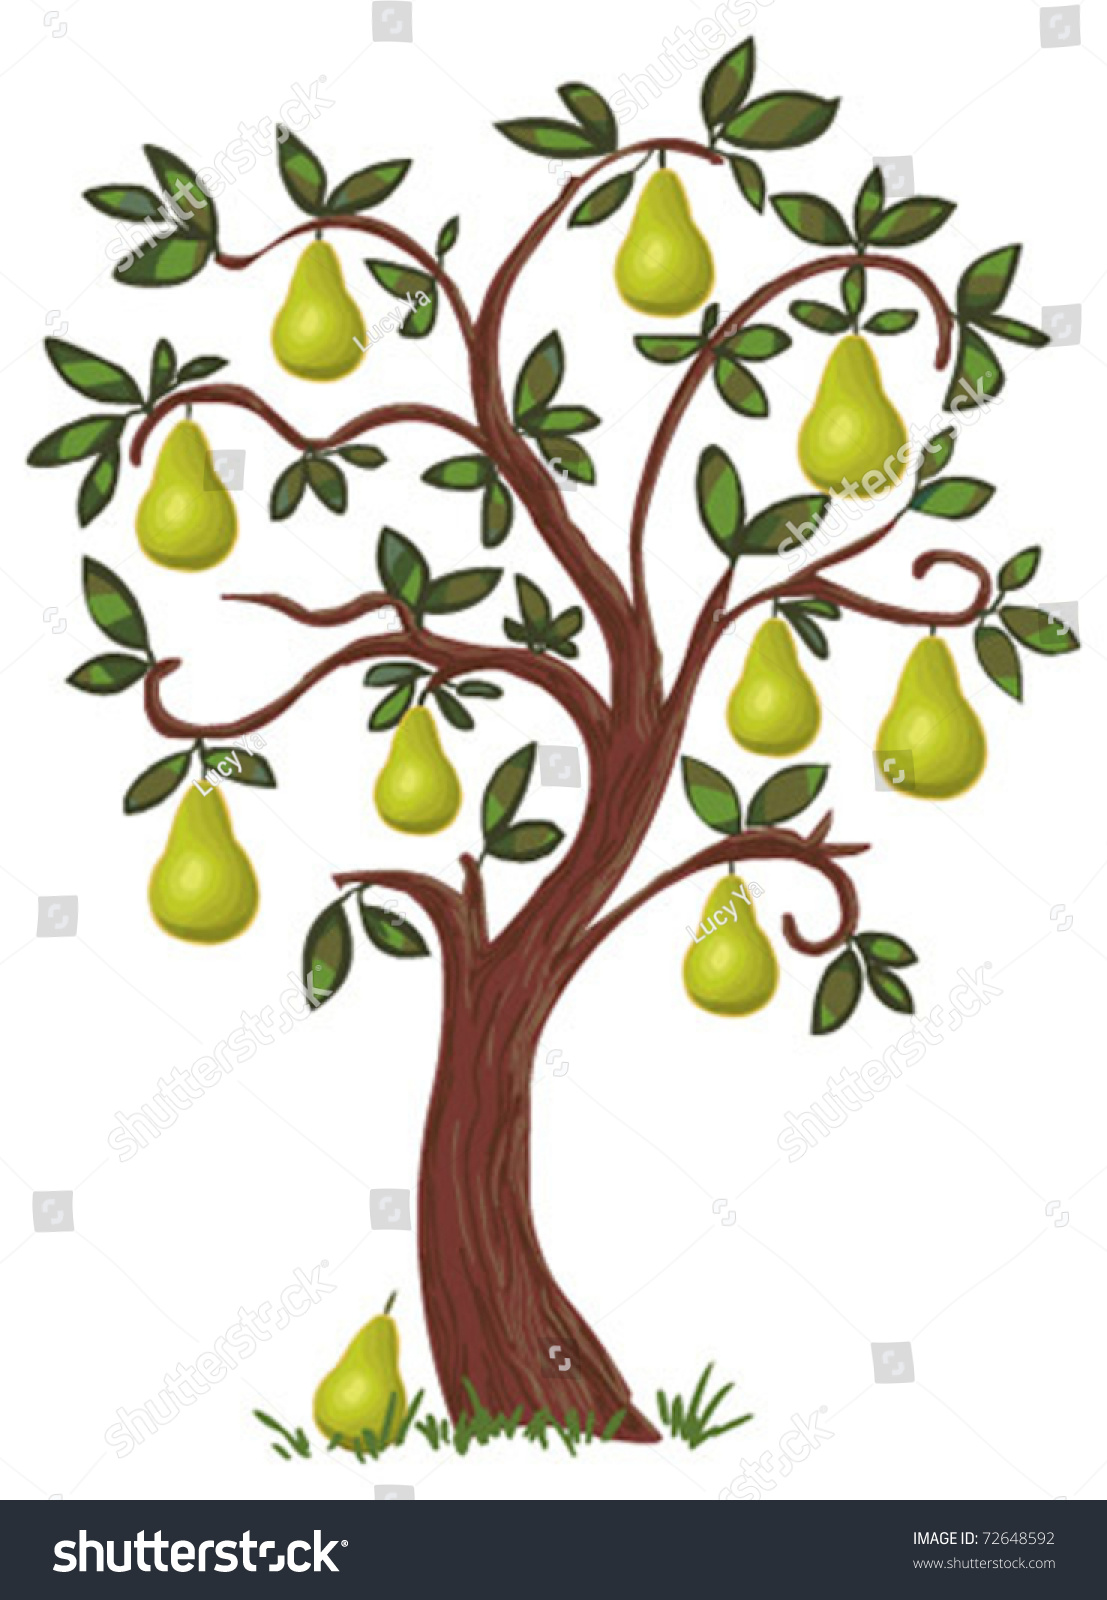 clipart pear tree - photo #25